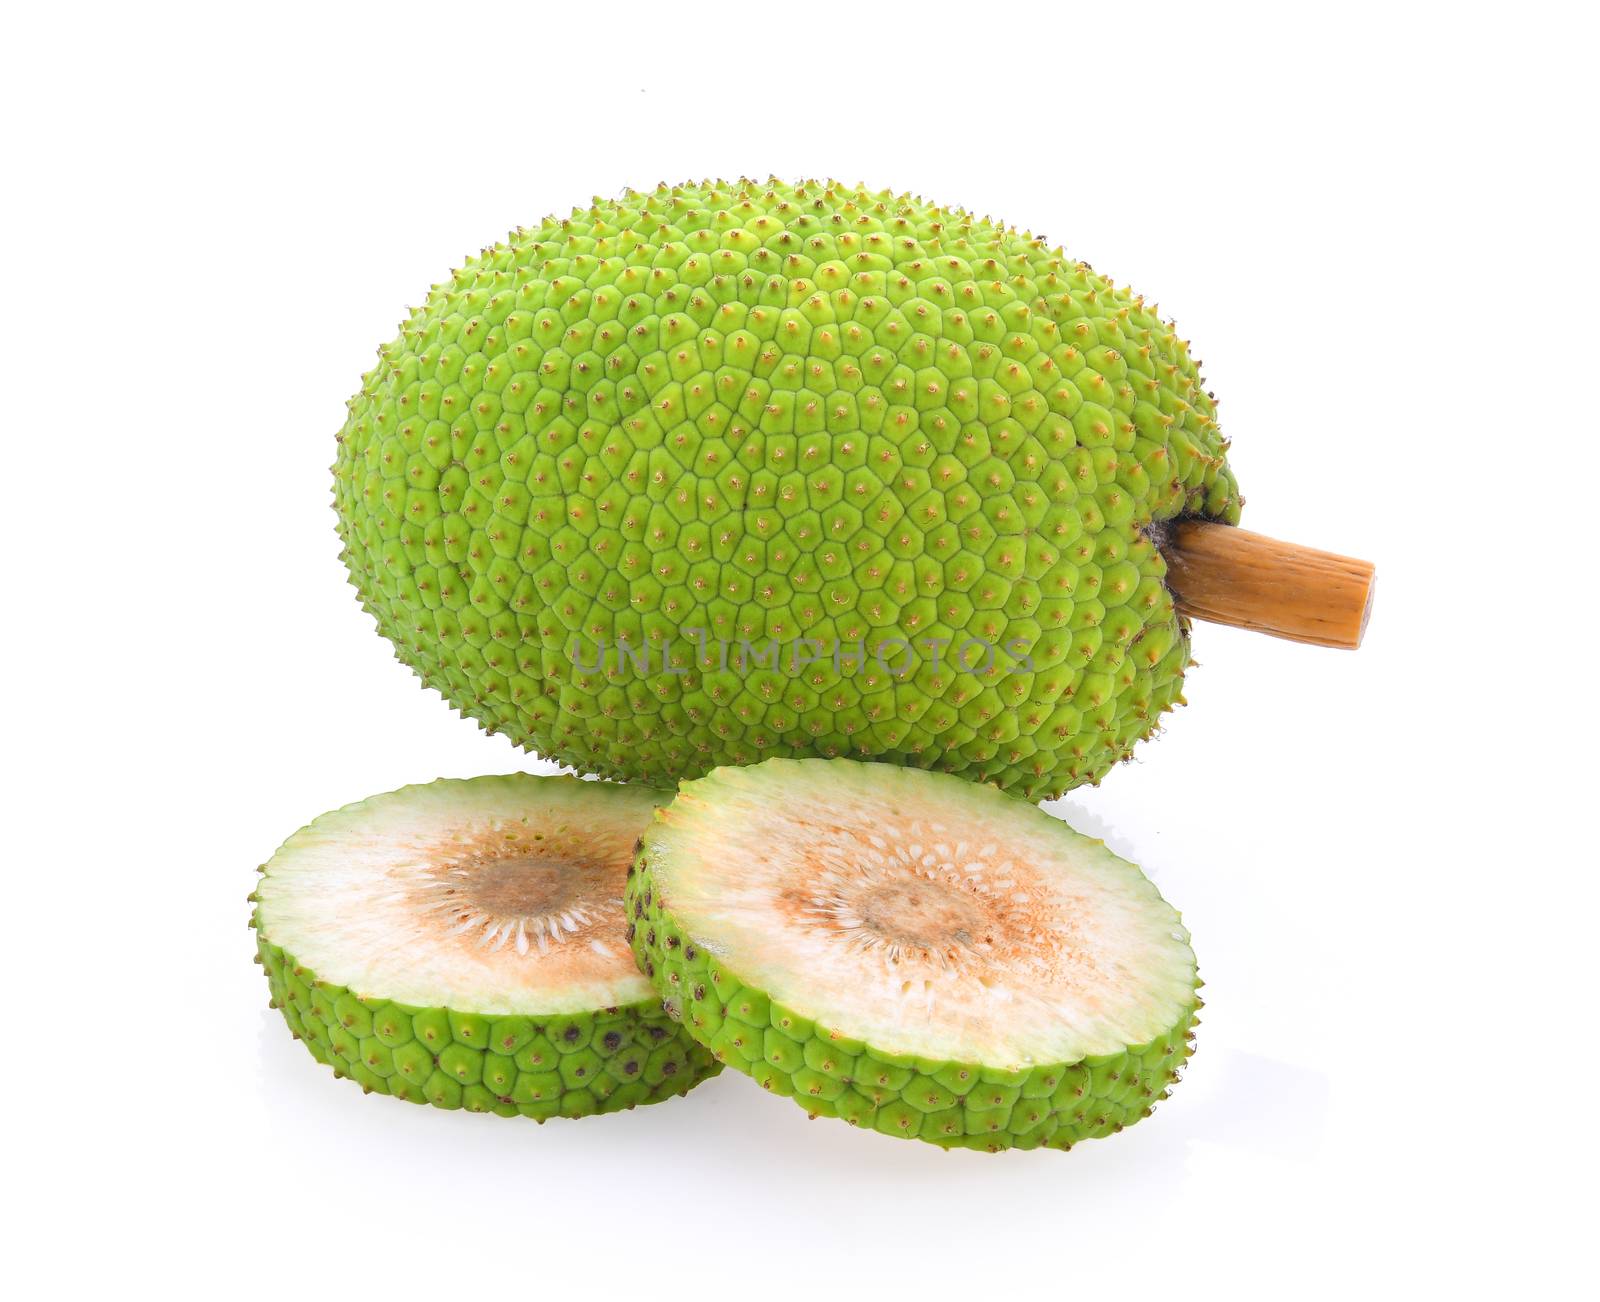 breadfruit isolated on white background